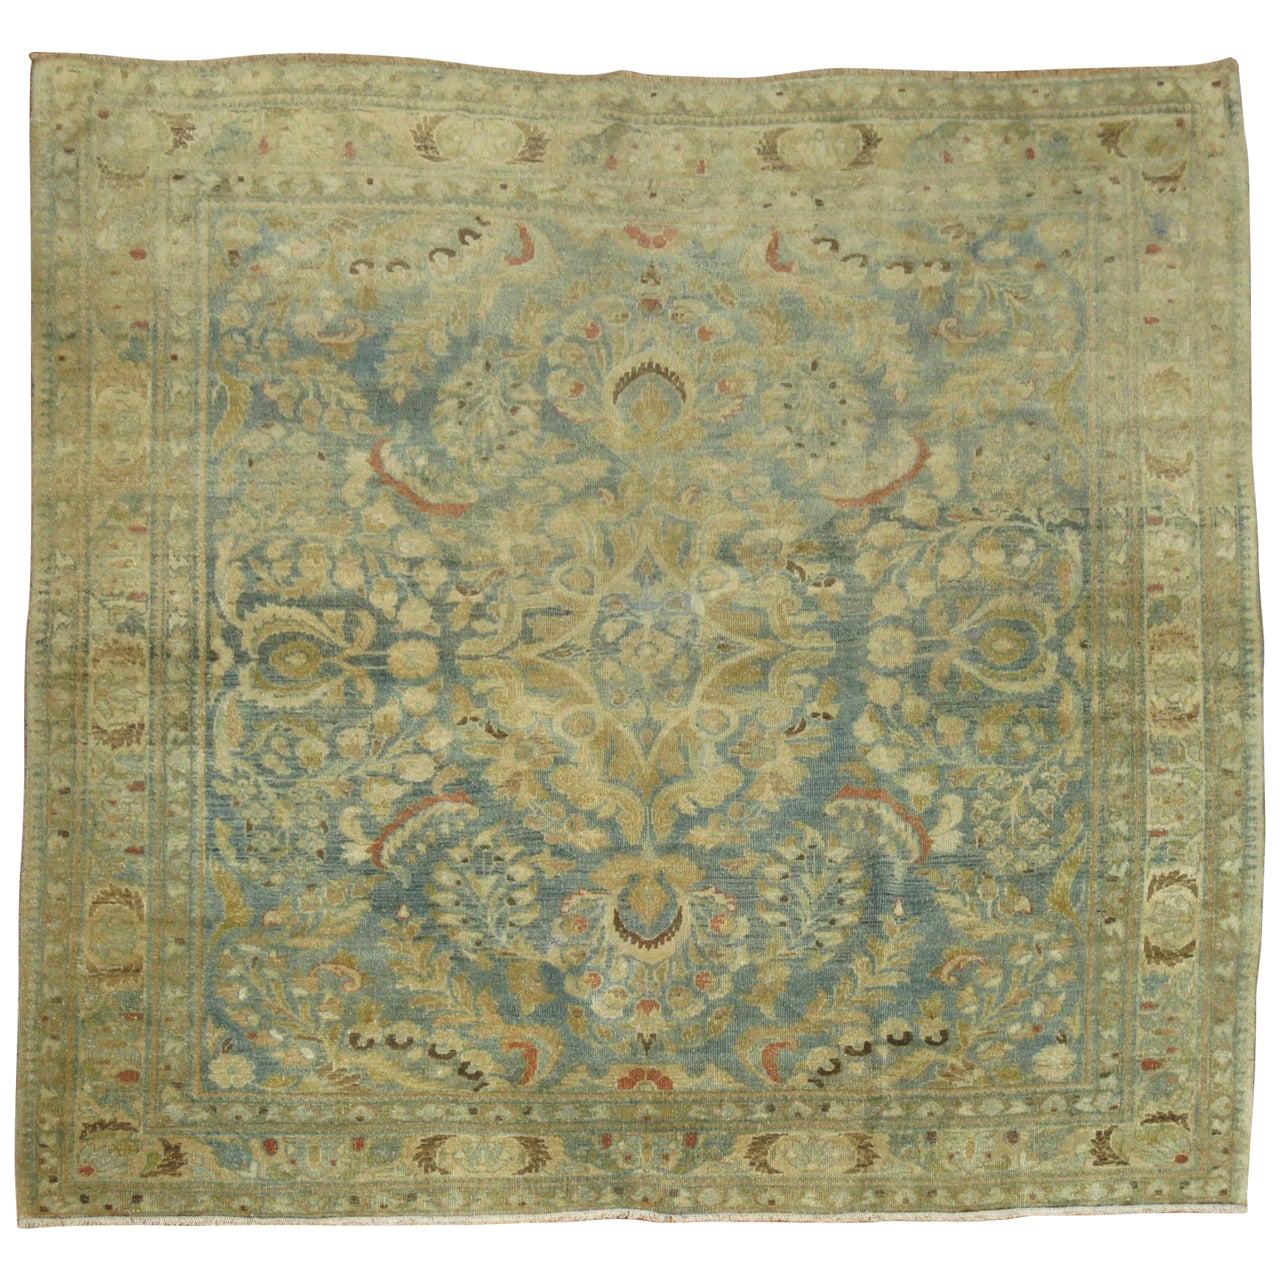 Ancien tapis de Sarouk traditionnel persan carré de 4 pieds de couleur bleu turquoise